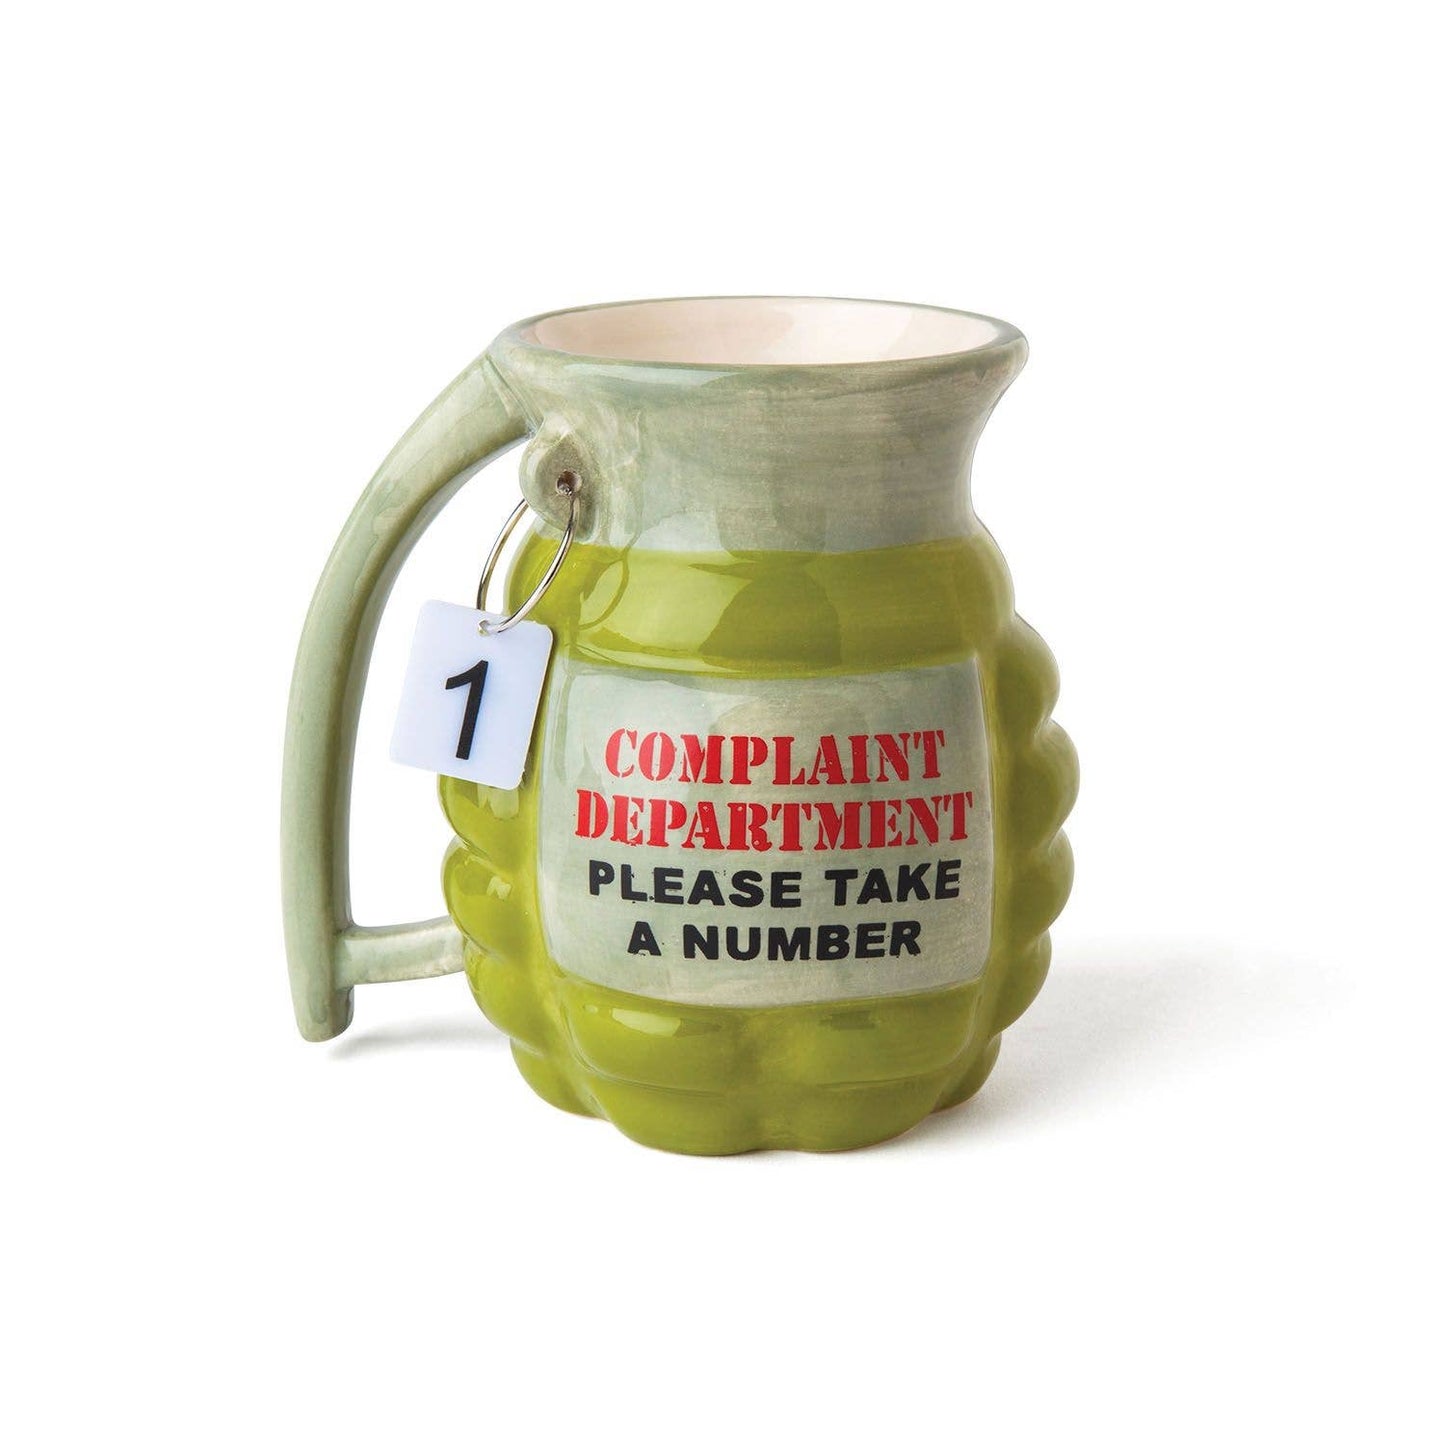 The Complaint Dept Mug "take a number"